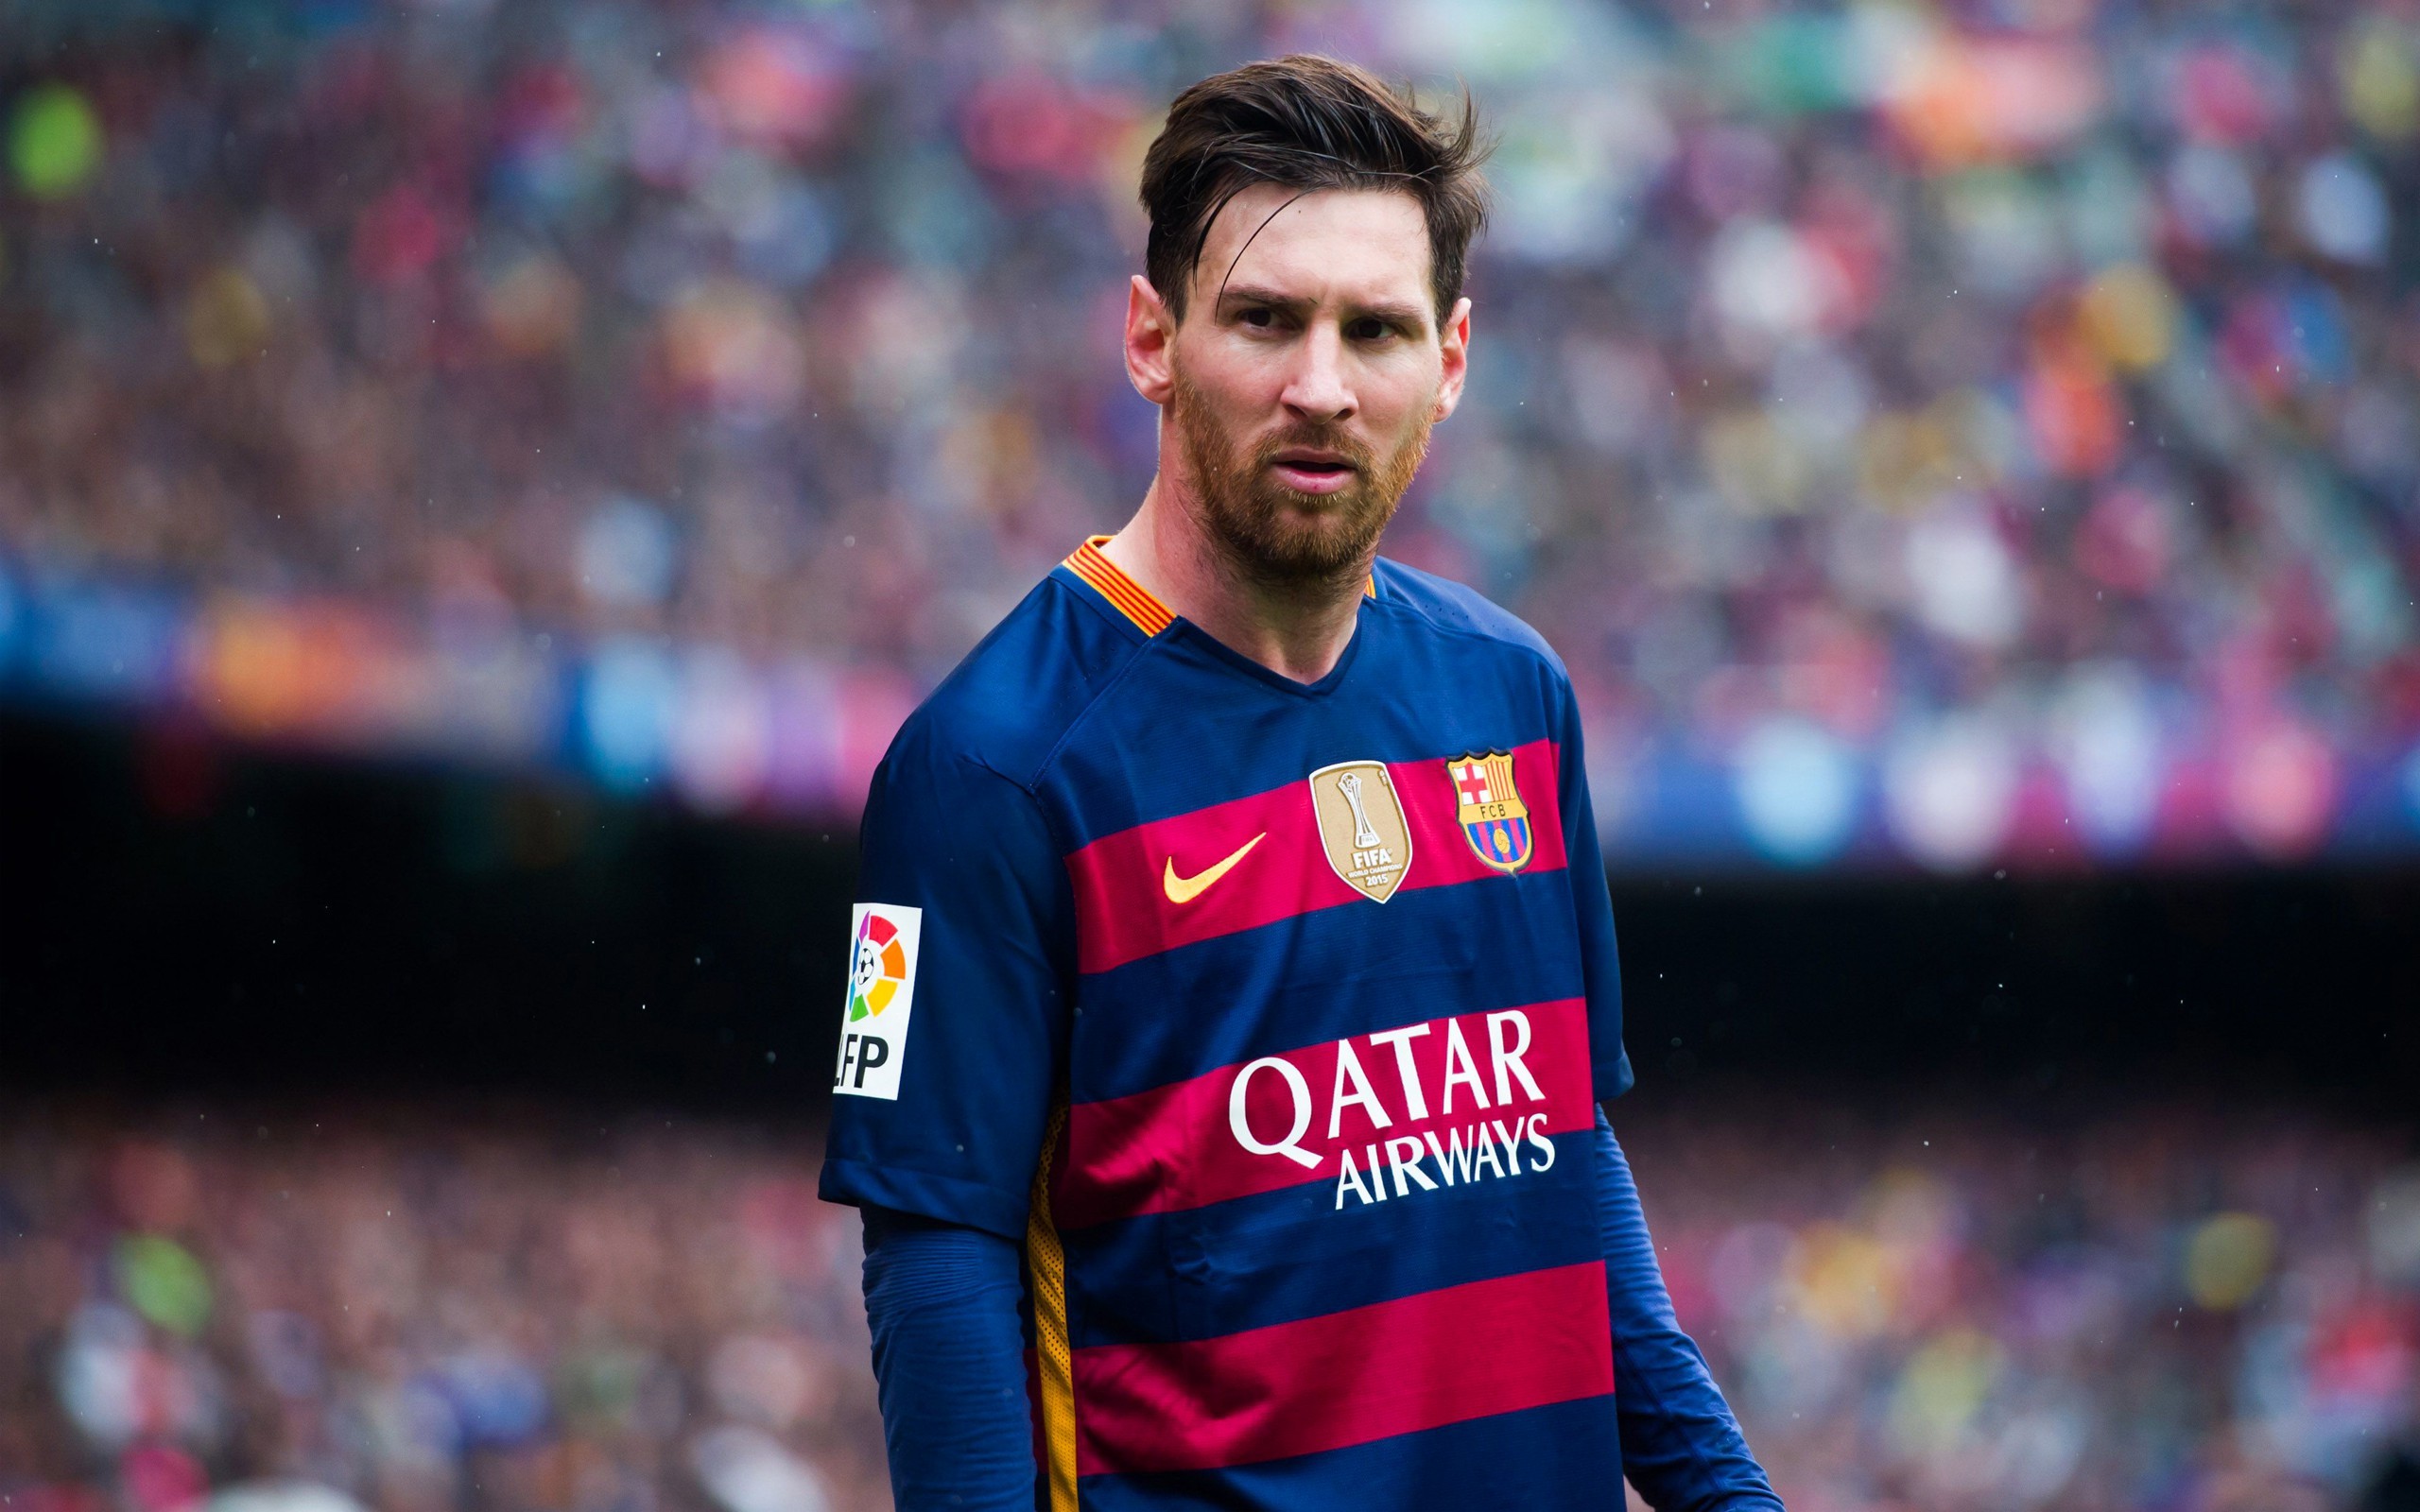 2560x1600 FC Barcelona Lionel Messi 2018